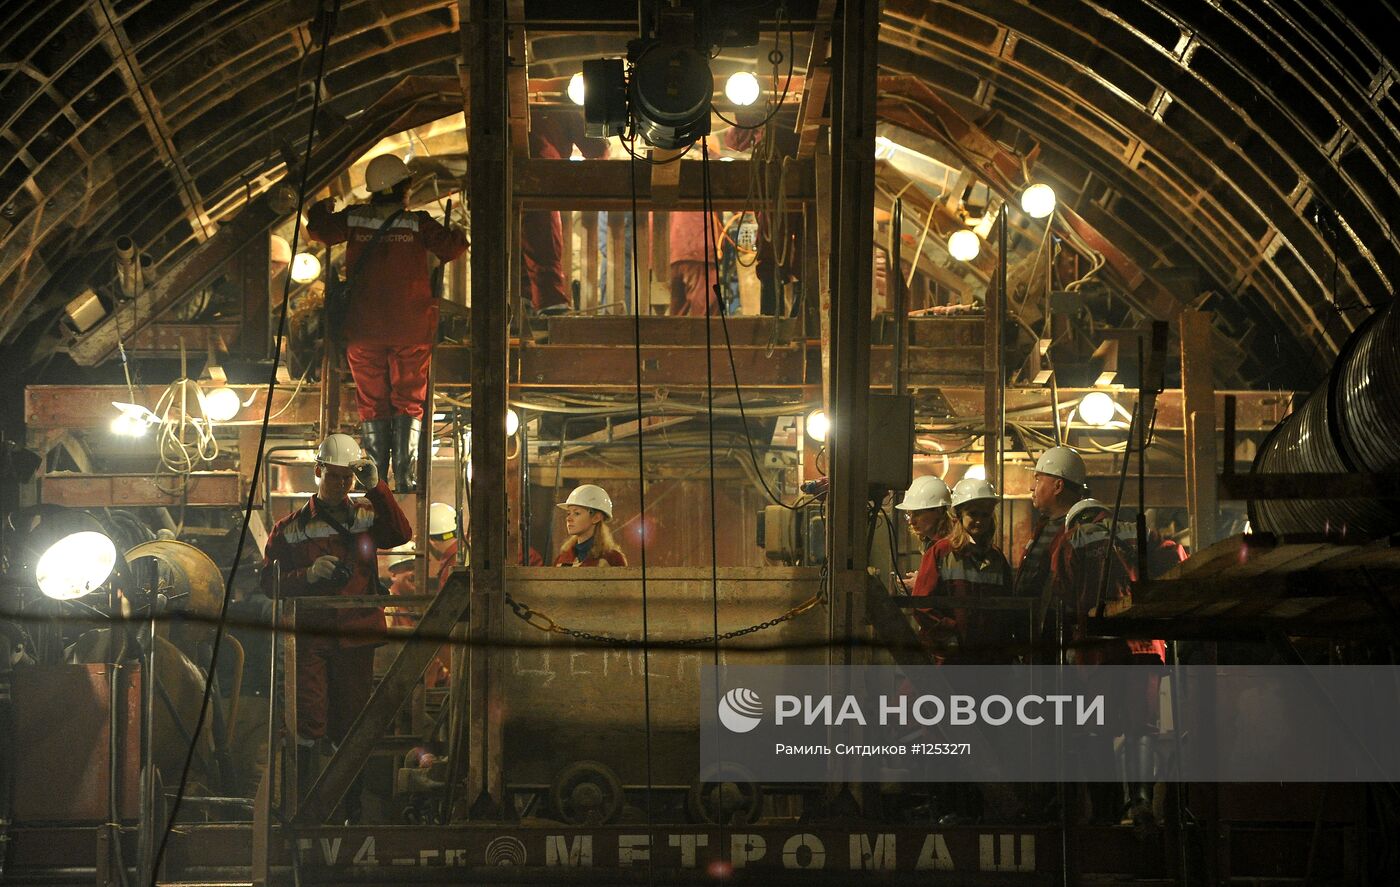 Строительство станции метро "Петровско-Разумовская II"